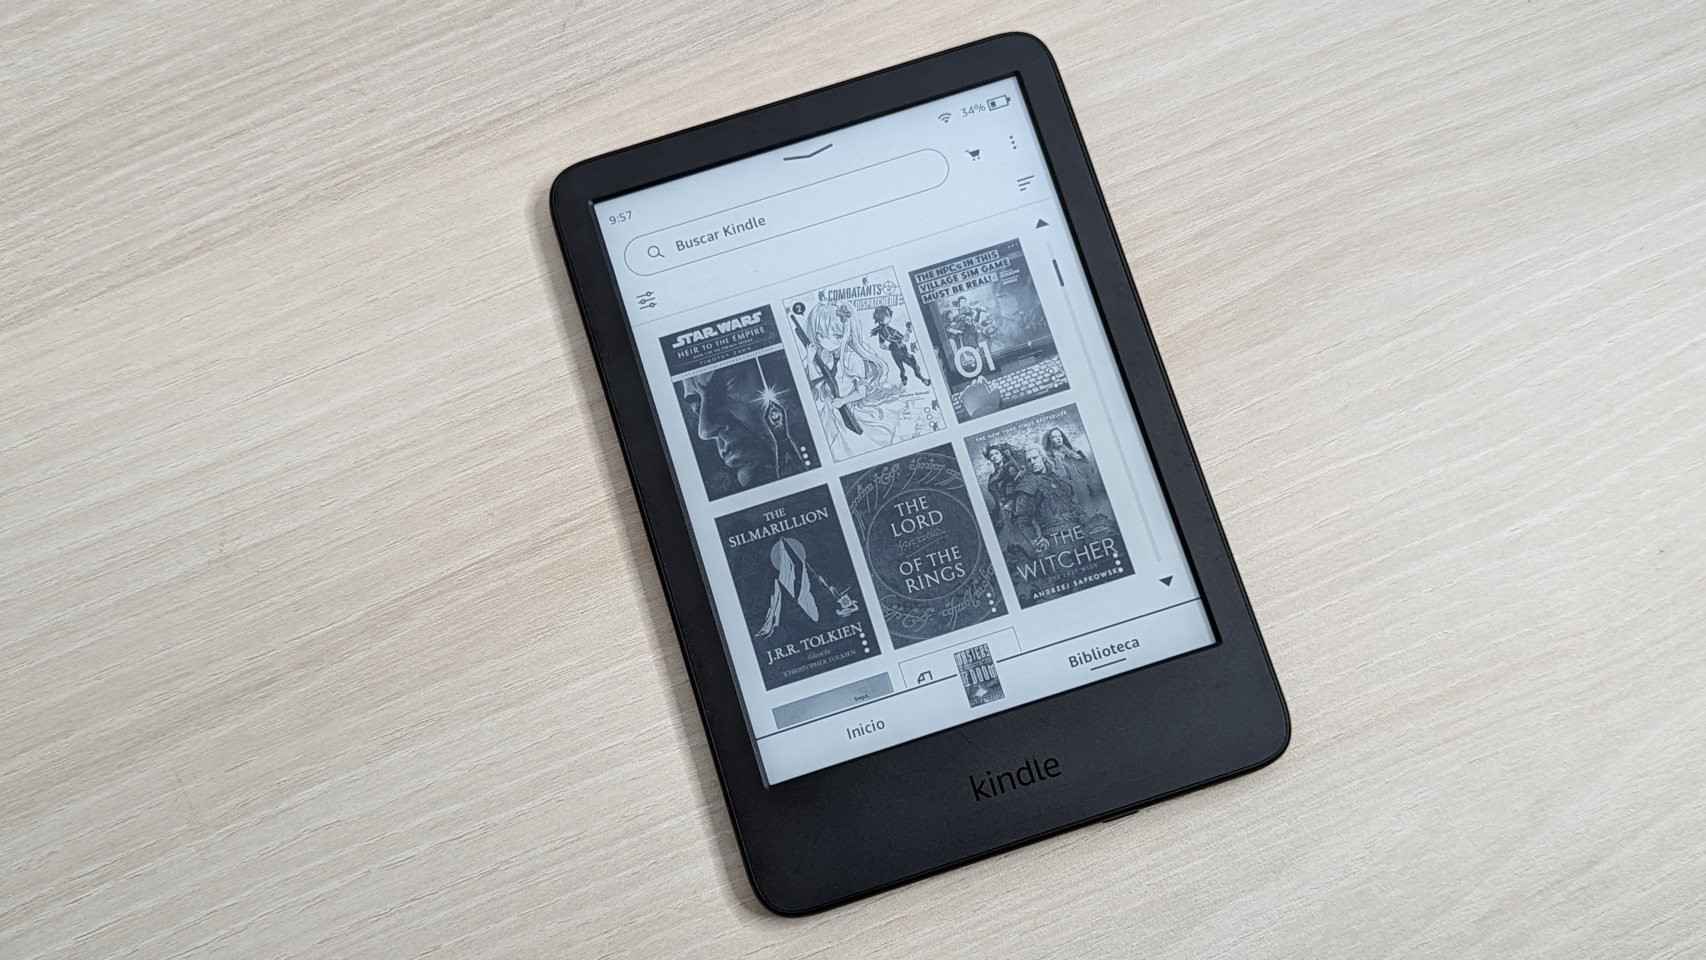 El mismo Amazon Kindle de siempre, pero muy mejorado